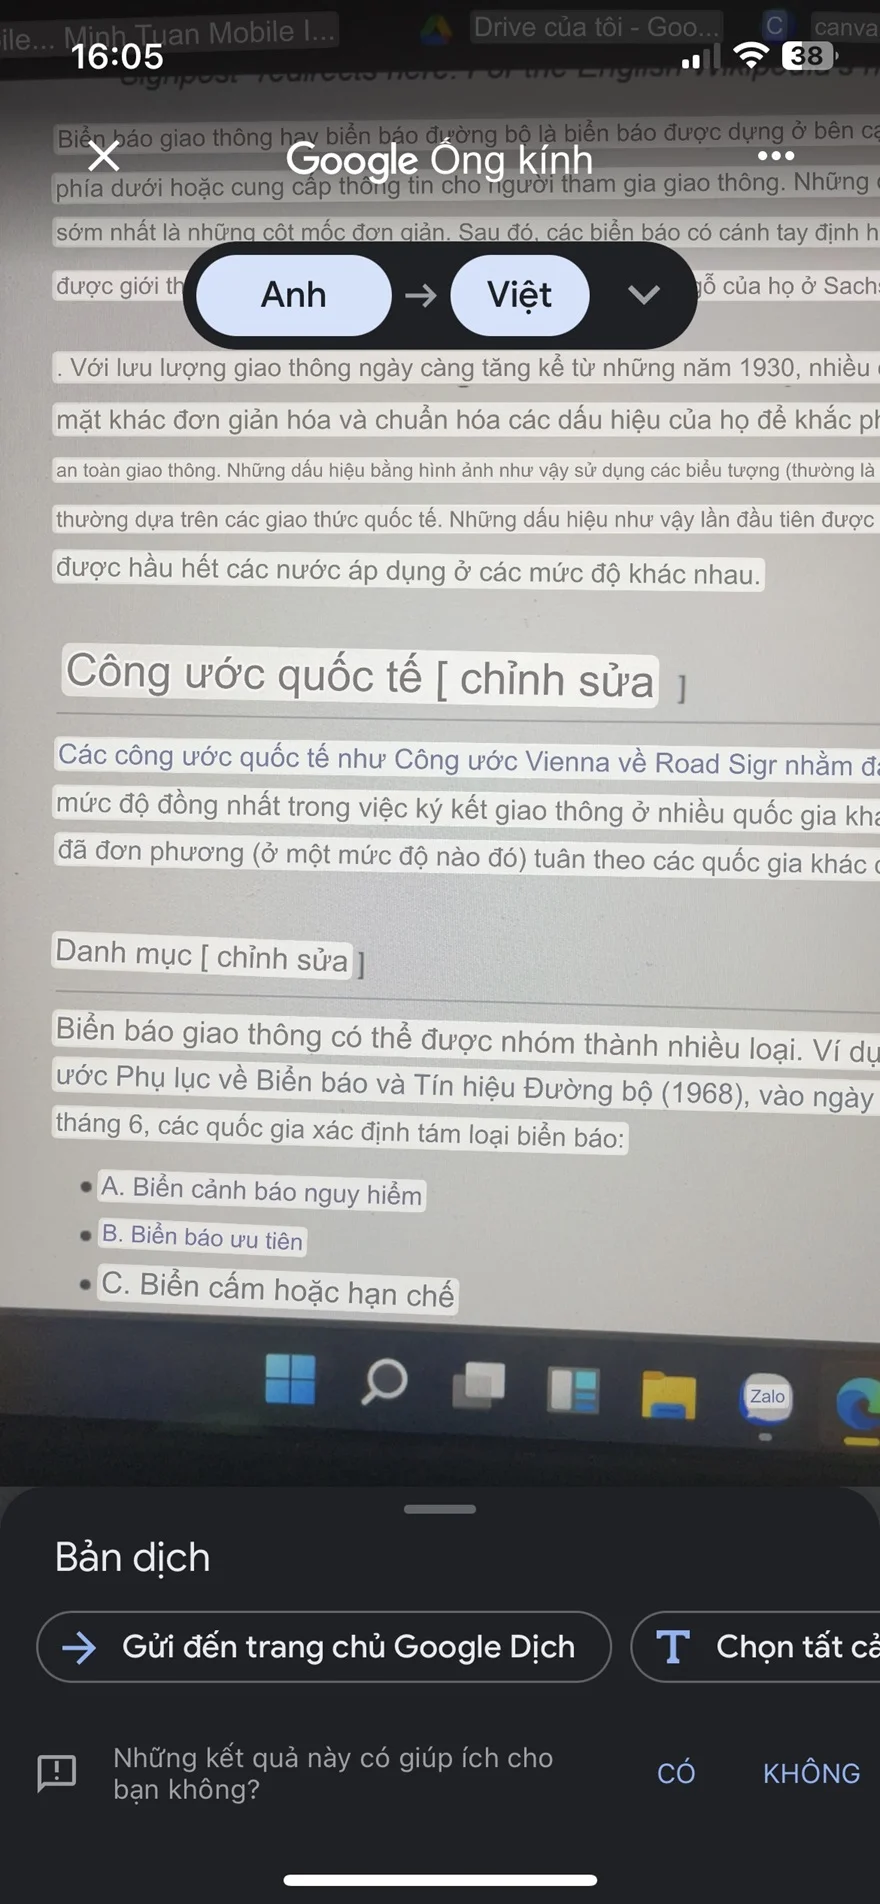 Cách dịch văn bản theo thời gian thực bằng camera iPhone